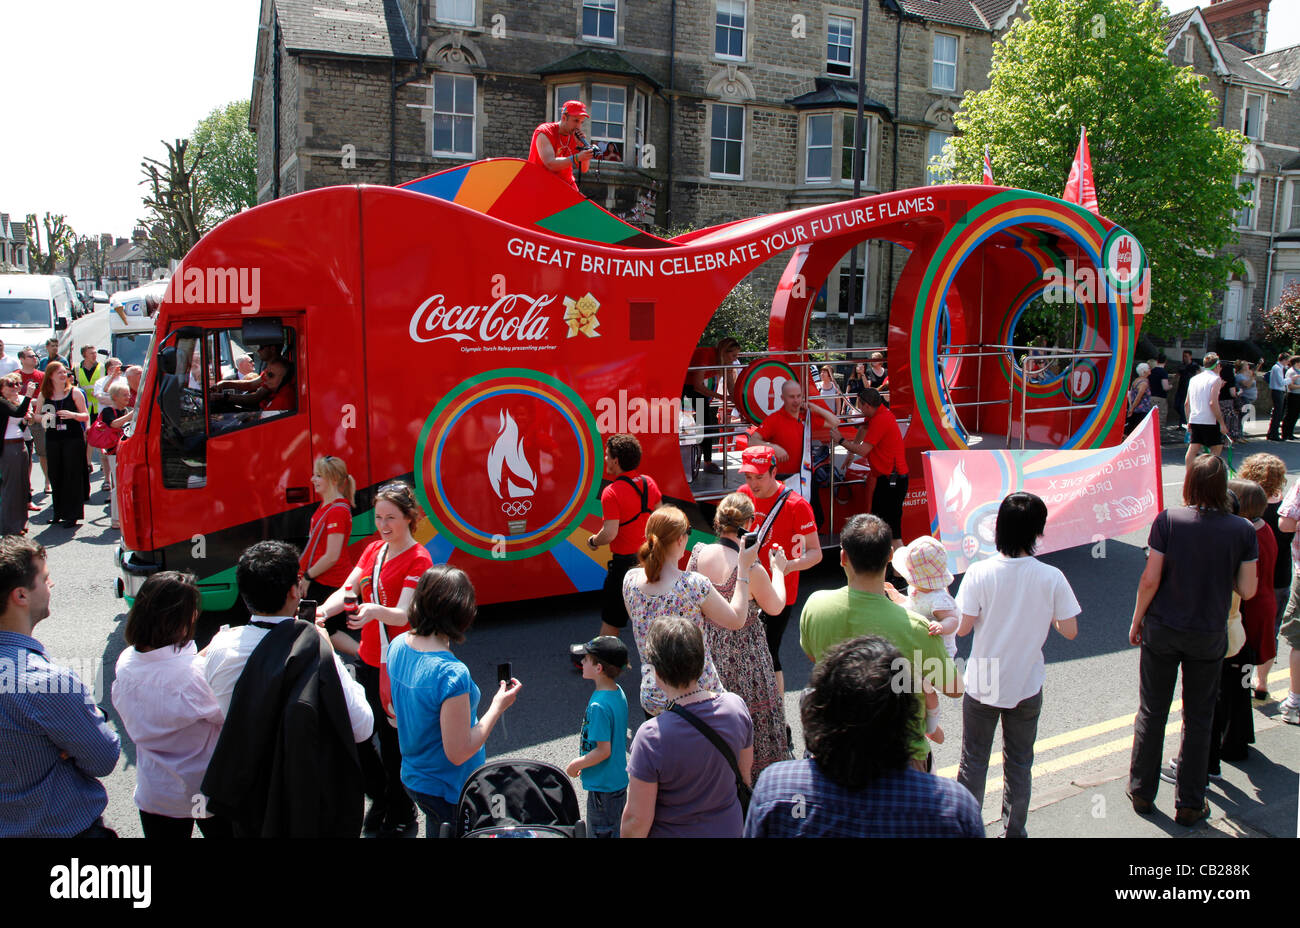 Mittwoch, 23. Mai 2012.  Swindon, Wiltshire, England, UK. Der Coca-Cola-Trainer signalisiert die bevorstehende Ankunft der Olympischen Fackel entlang Bath Road in Swindon, Wiltshire.  Coca-Cola ist einer der Sponsoren der Olympischen Spiele 2012 in London. Stockfoto